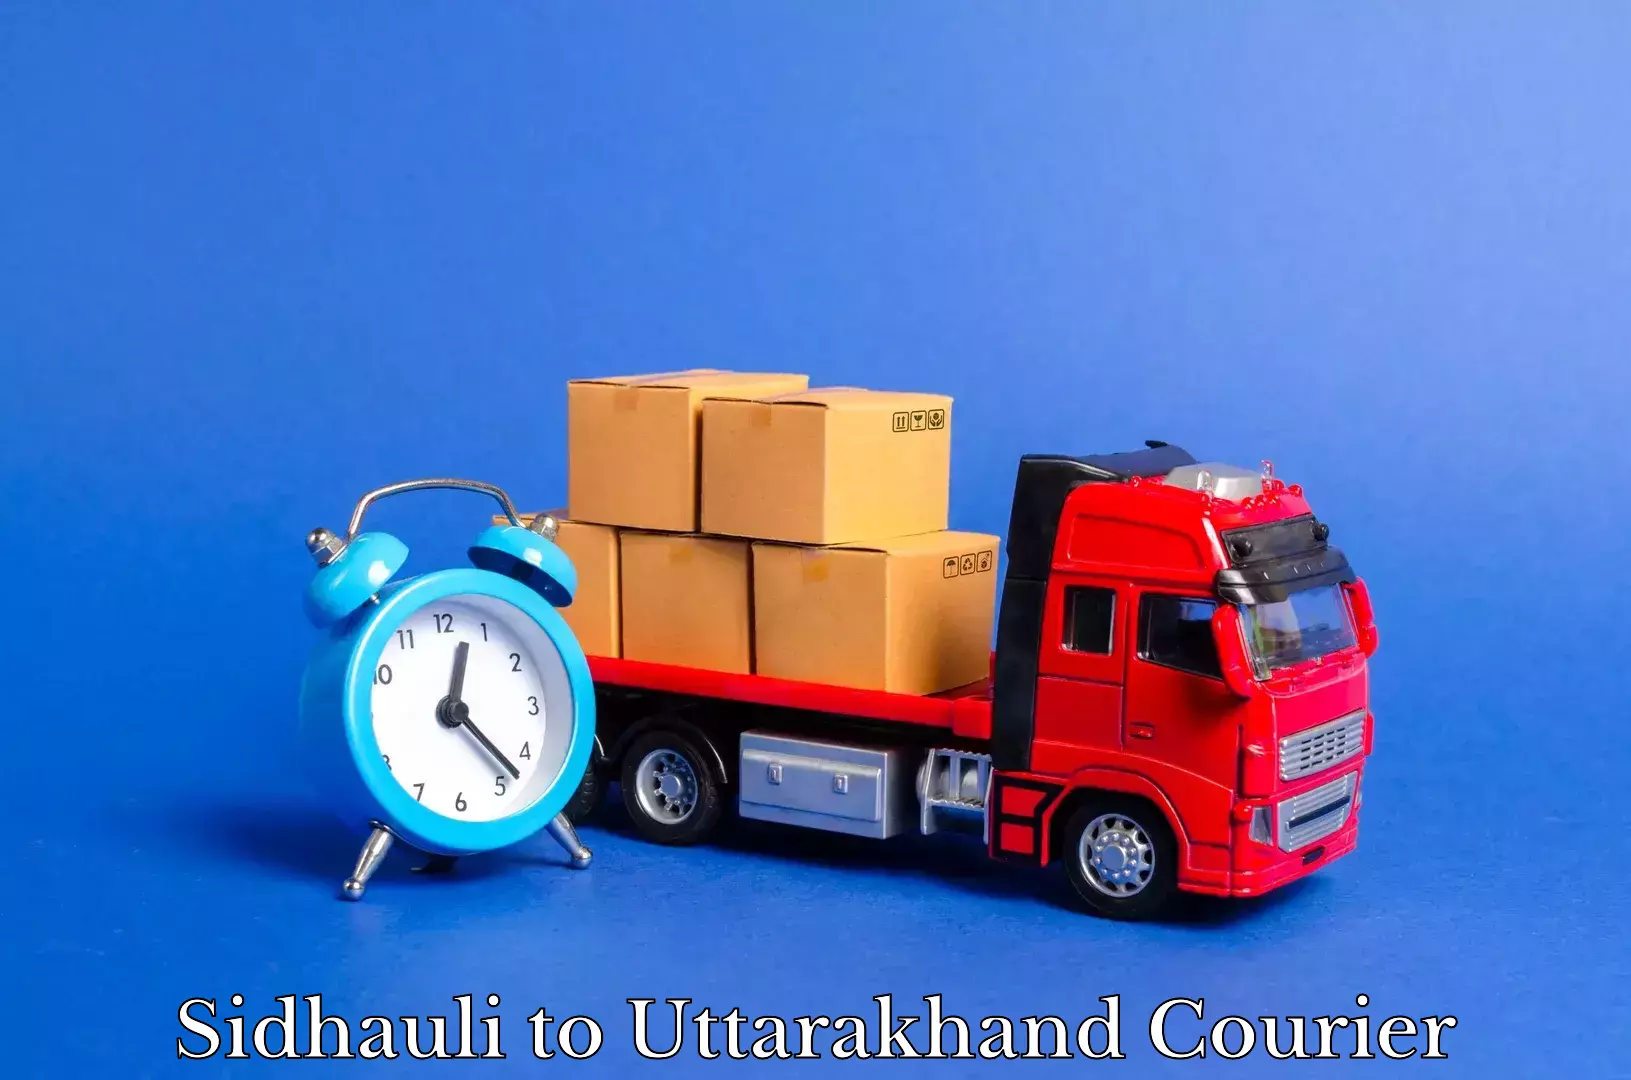 Moving and packing experts Sidhauli to Uttarakhand